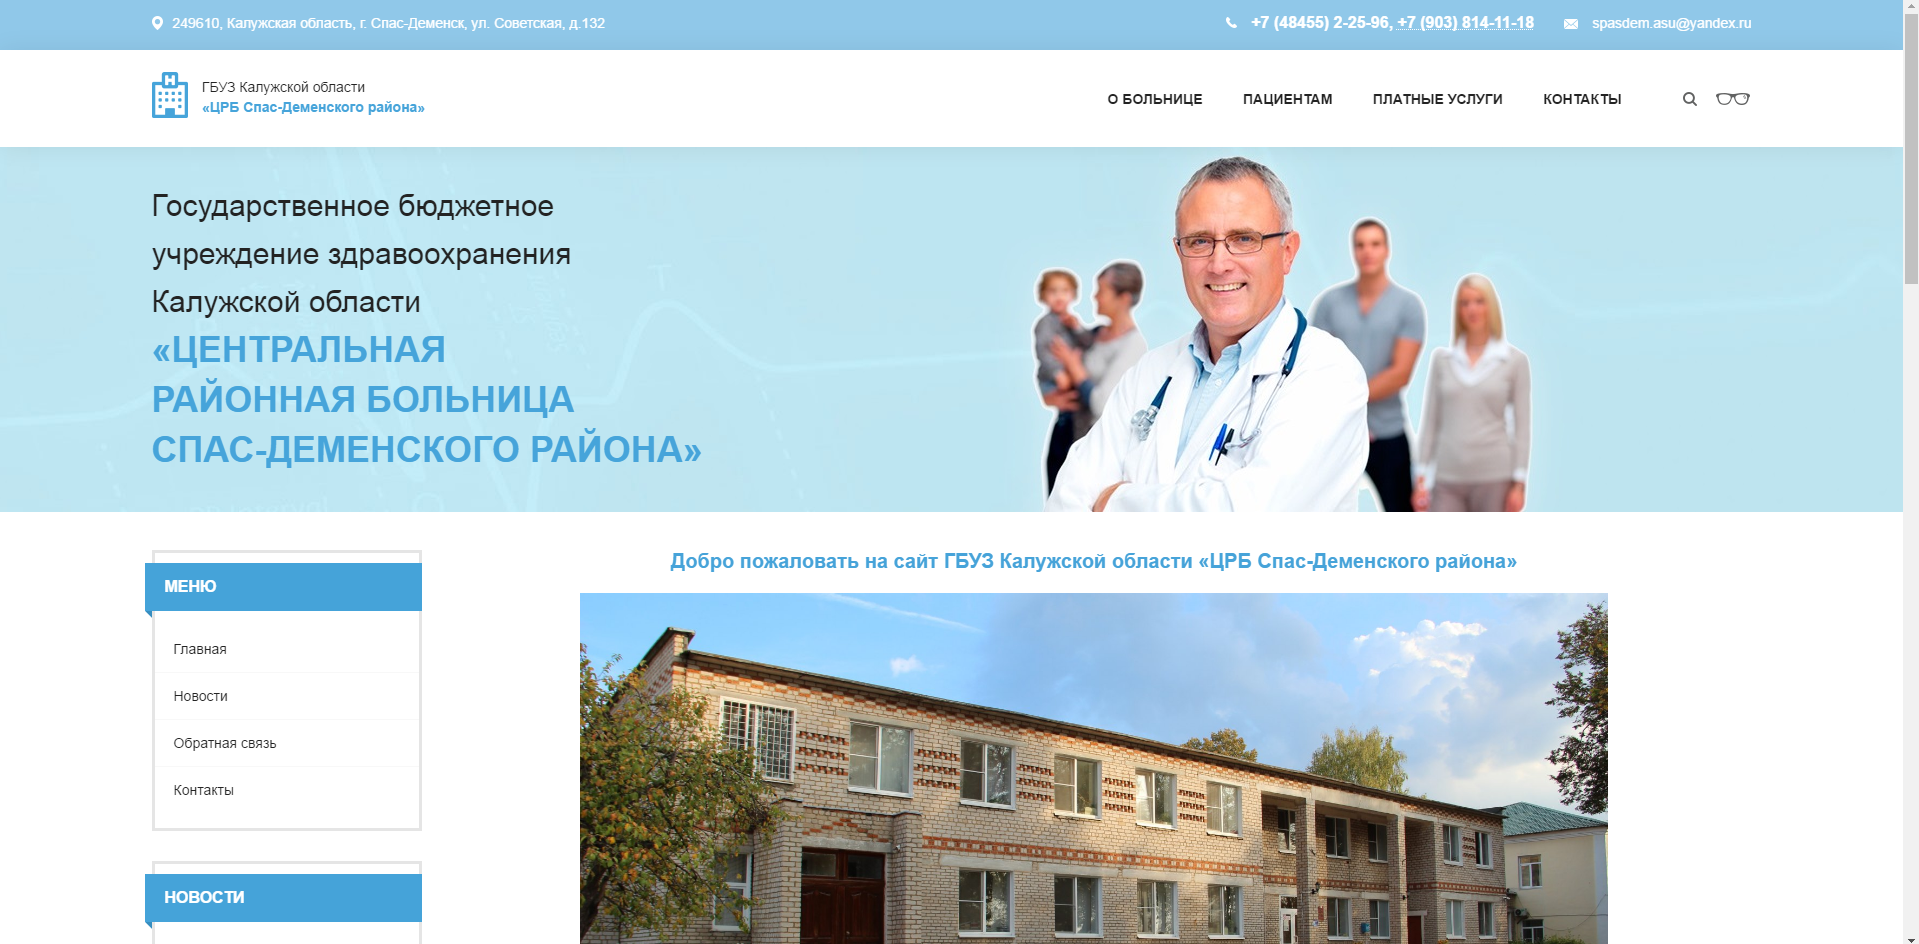 Сайт государственного бюджетного учреждения здравоохранения